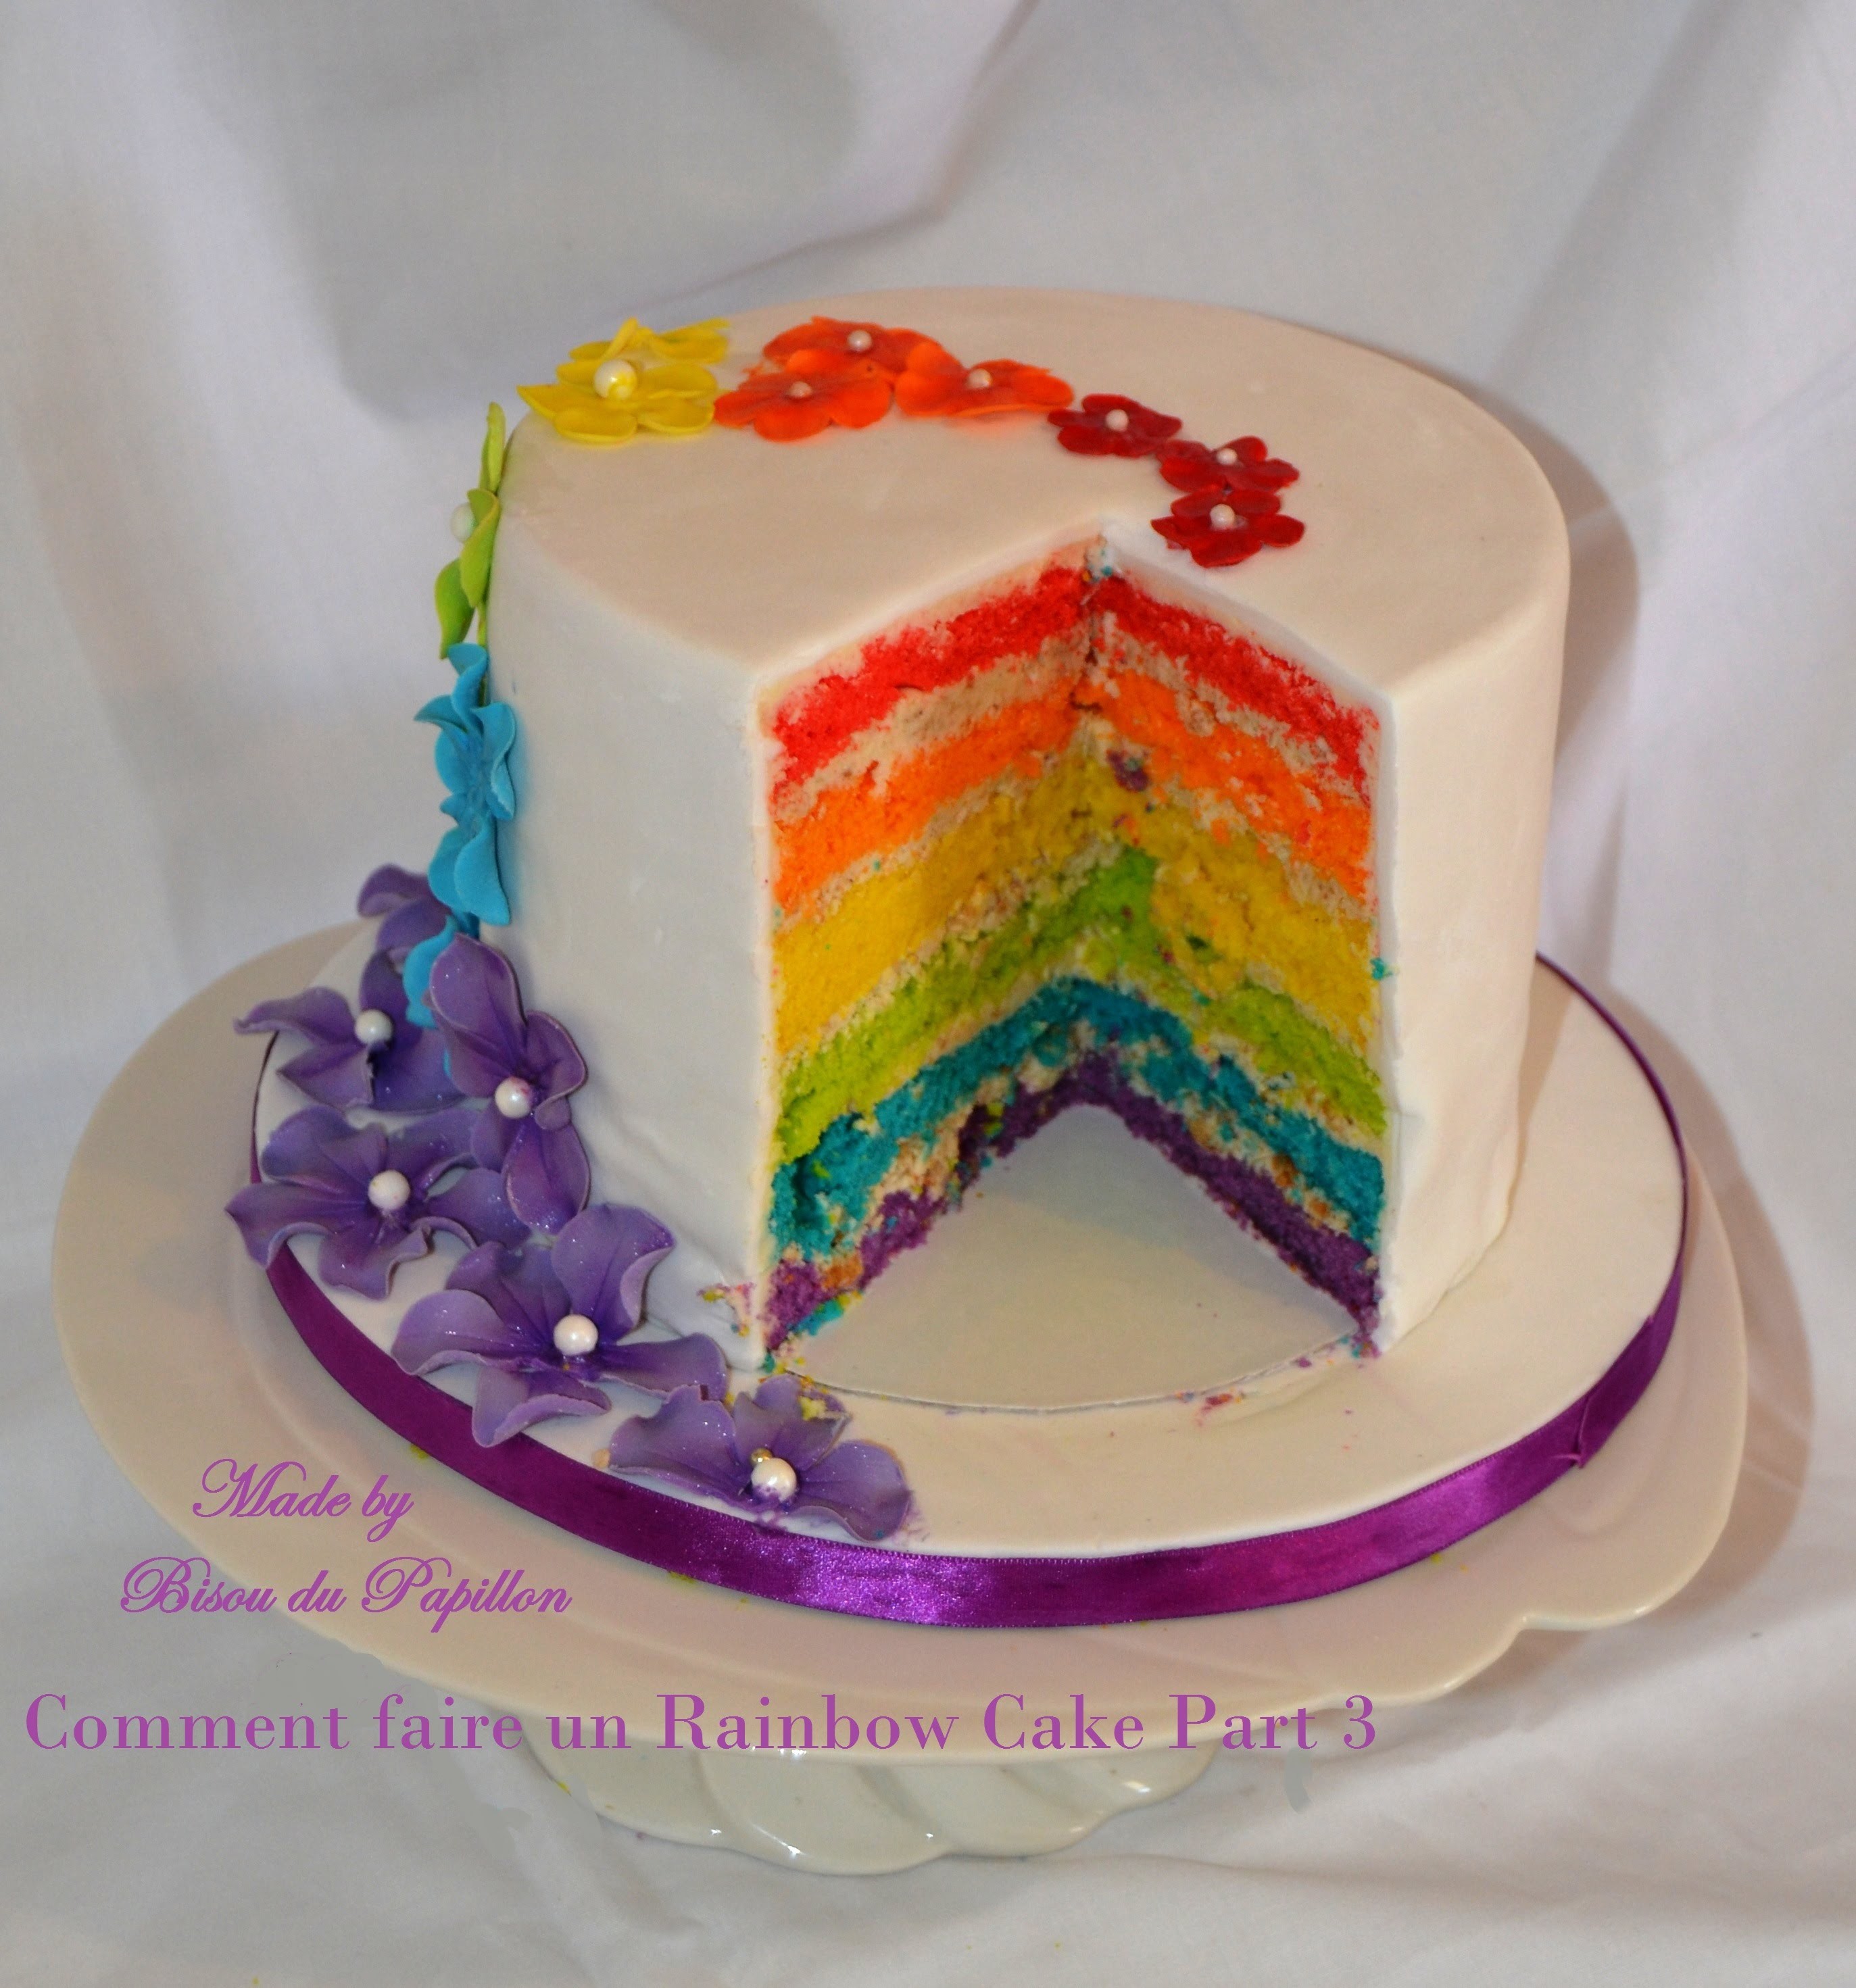 Comment faire un Rainbow Cake Part 3